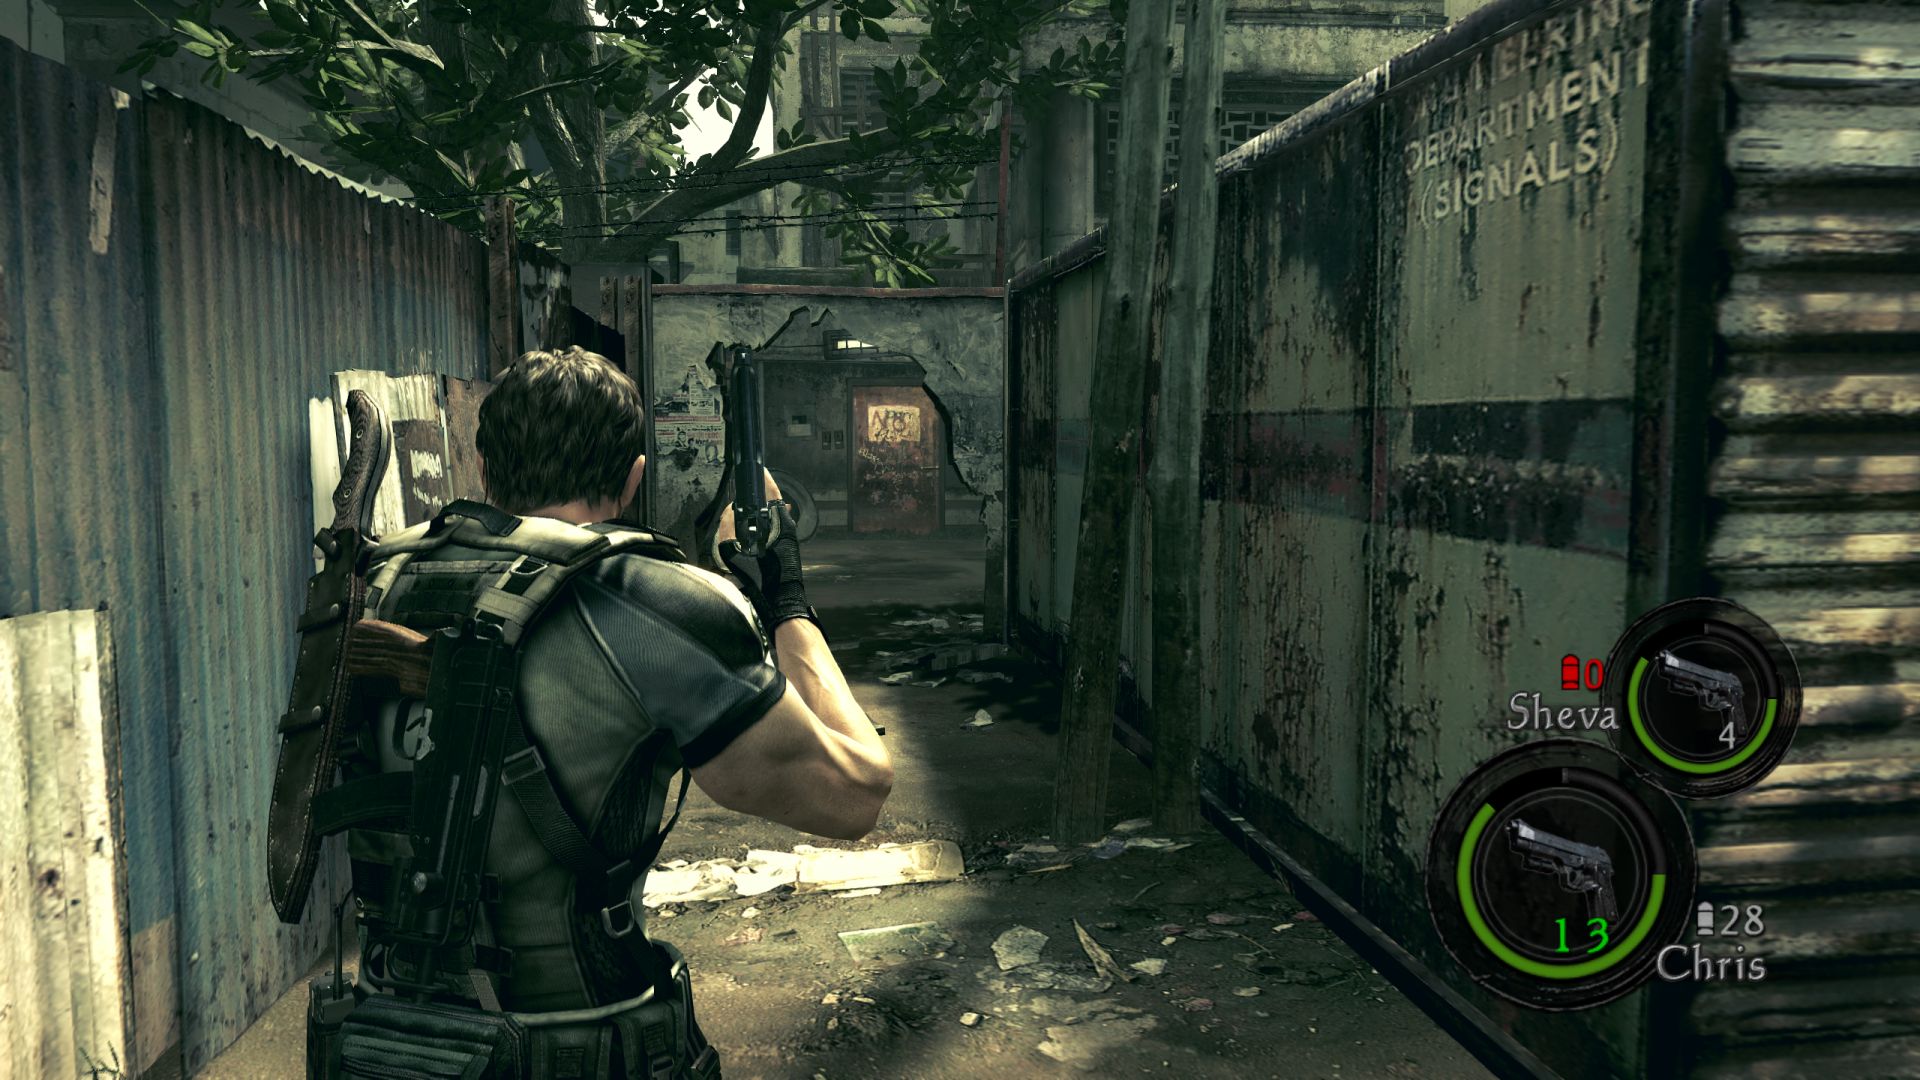 Download mobile wallpaper Resident Evil 5, Resident Evil, Video Game for free.